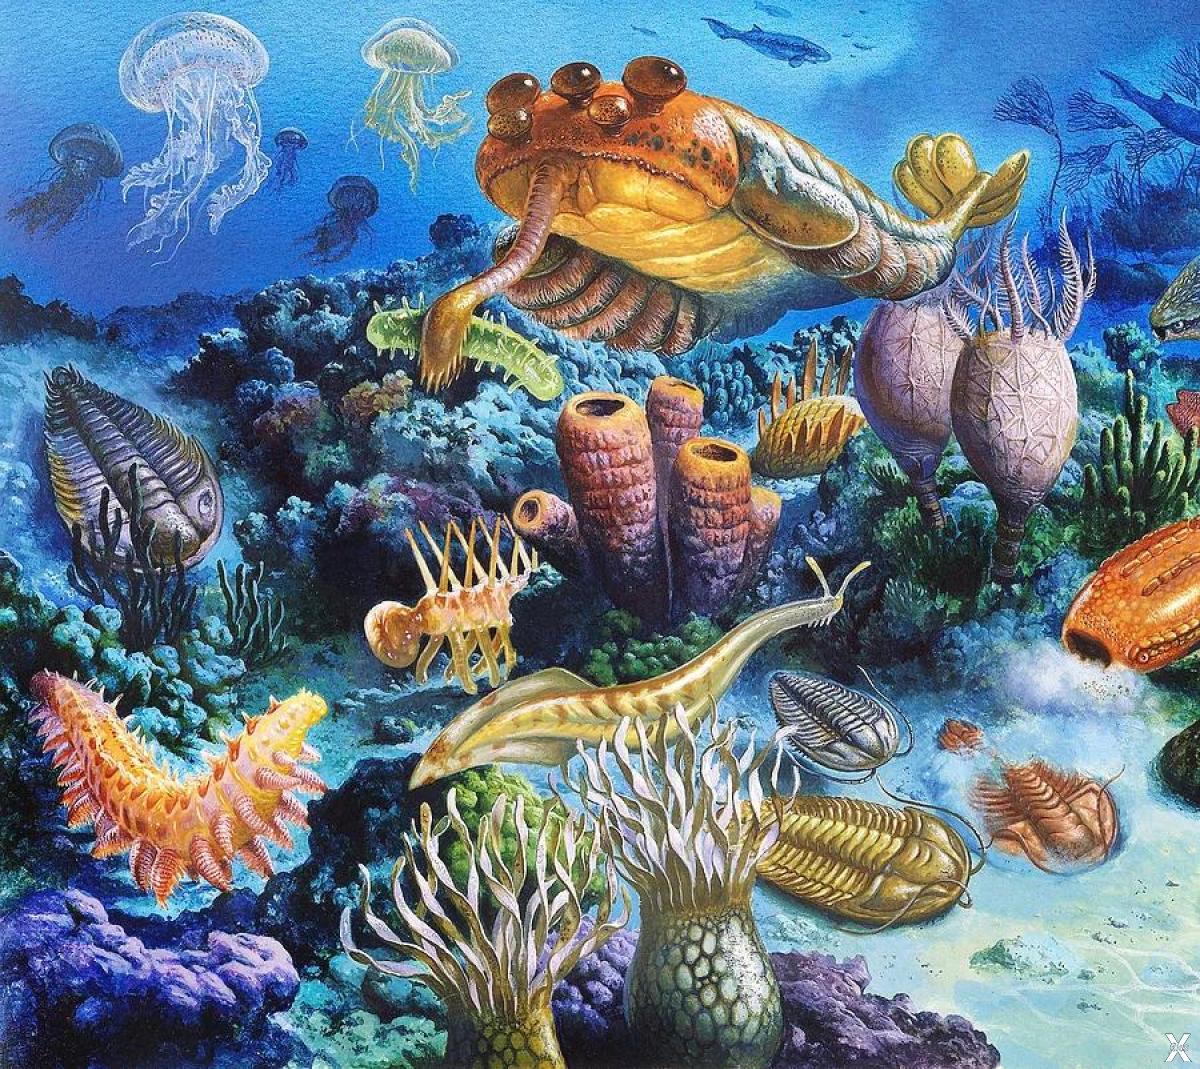 Разнообразие живых организмов в океане. Палеозой Эра Кембрий. Протерозойская Эра Кембрий. Кембрийский период палеозойской эры. Палеозойская Эра ордовикский период.